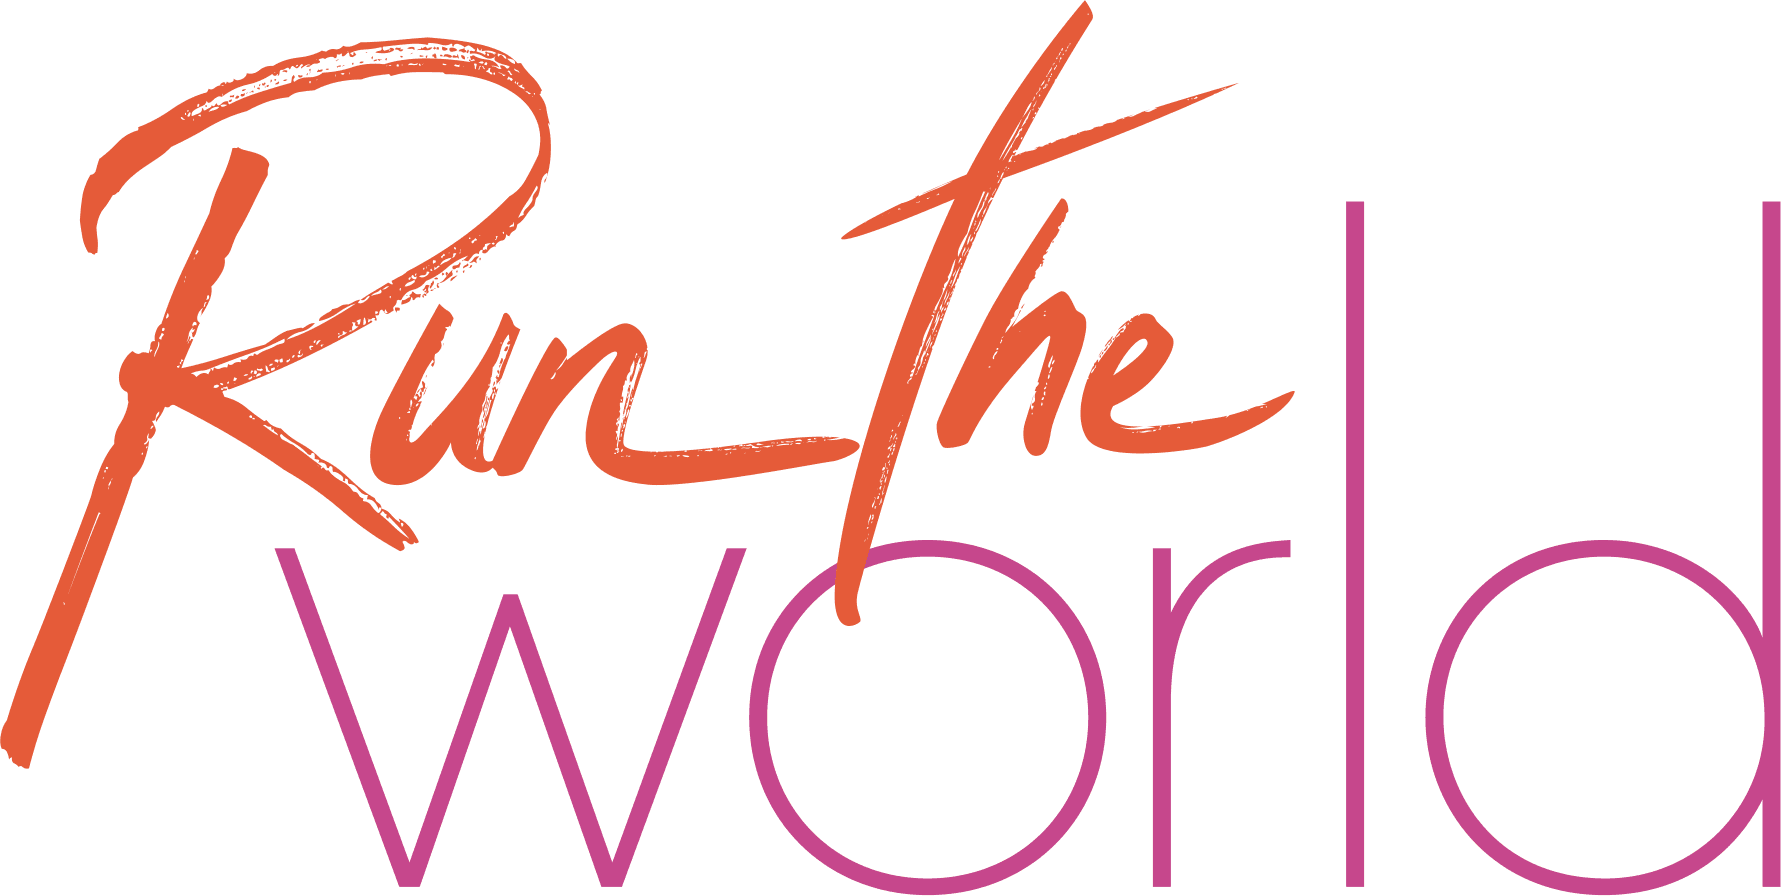 Run the World logo